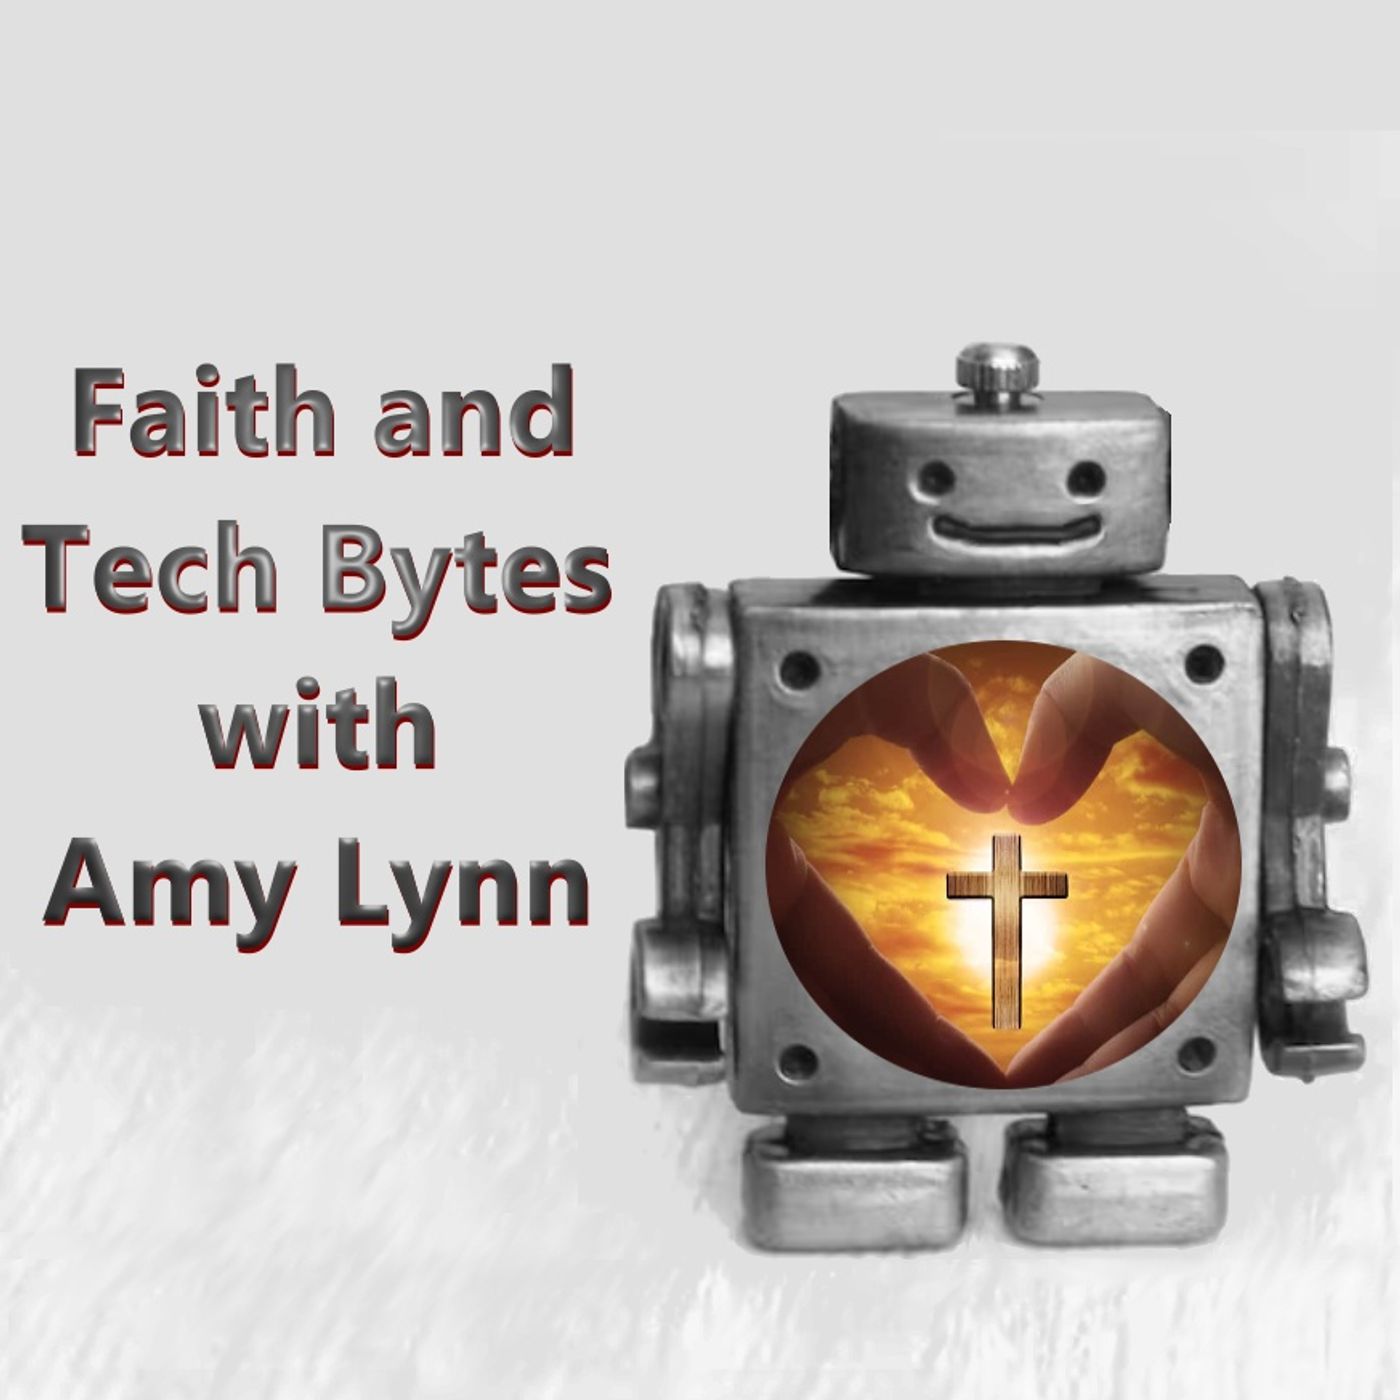 Faith and Tech Bytes with Amy Lynn podcast